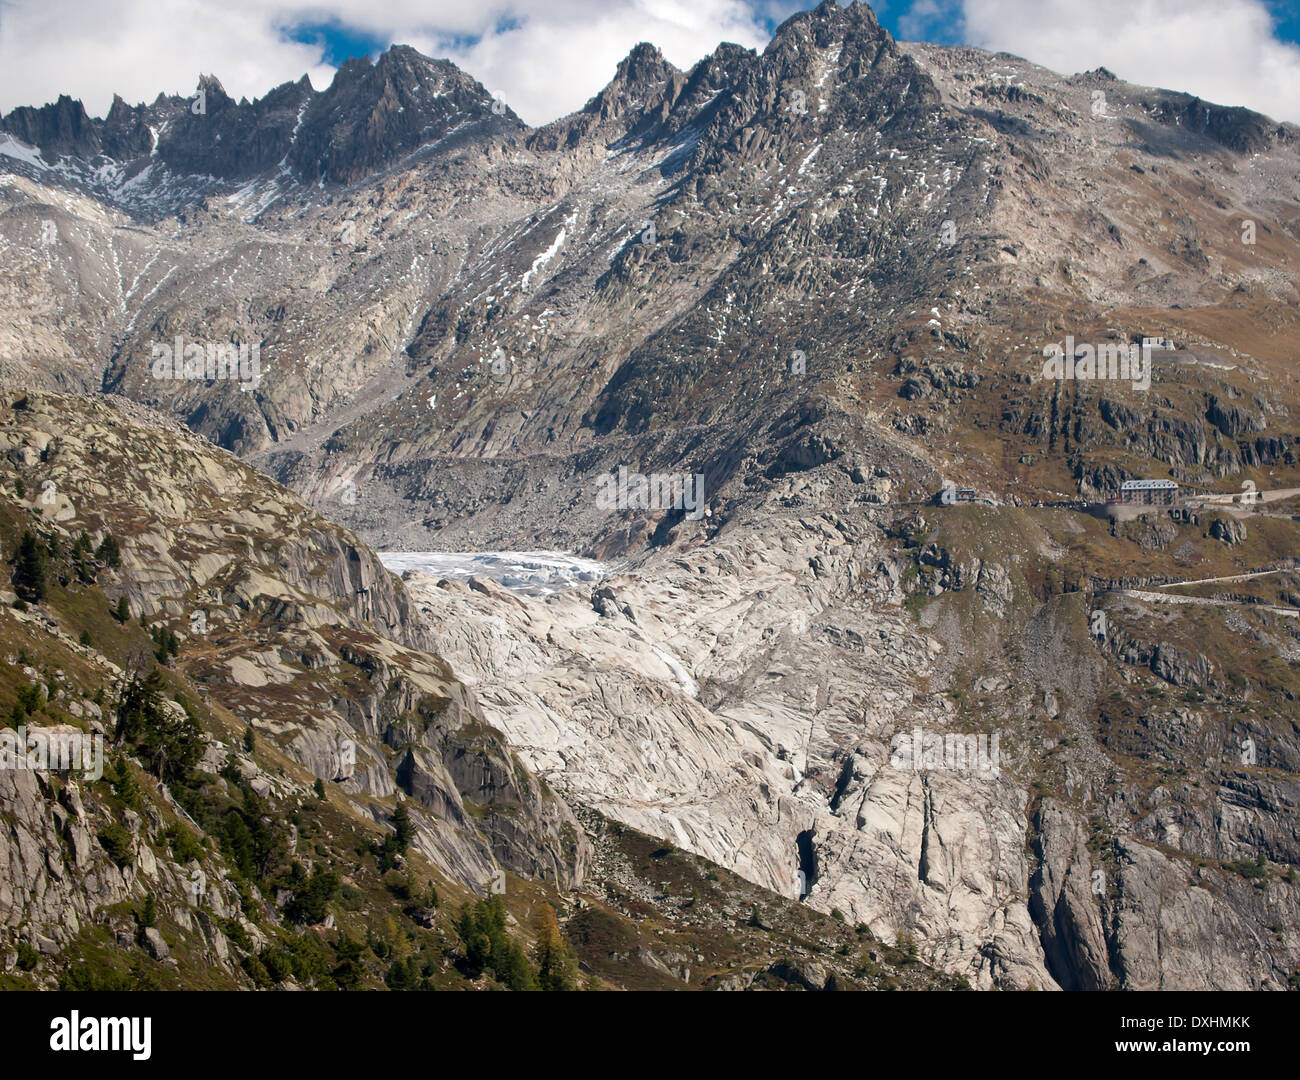 Il ghiacciaio del Rodano presso il Passo della Furka pass montagna nelle Alpi Svizzere nel settembre 2011. Visibile a destra è il punto di riferimento Hotel Belvedere. Foto Stock